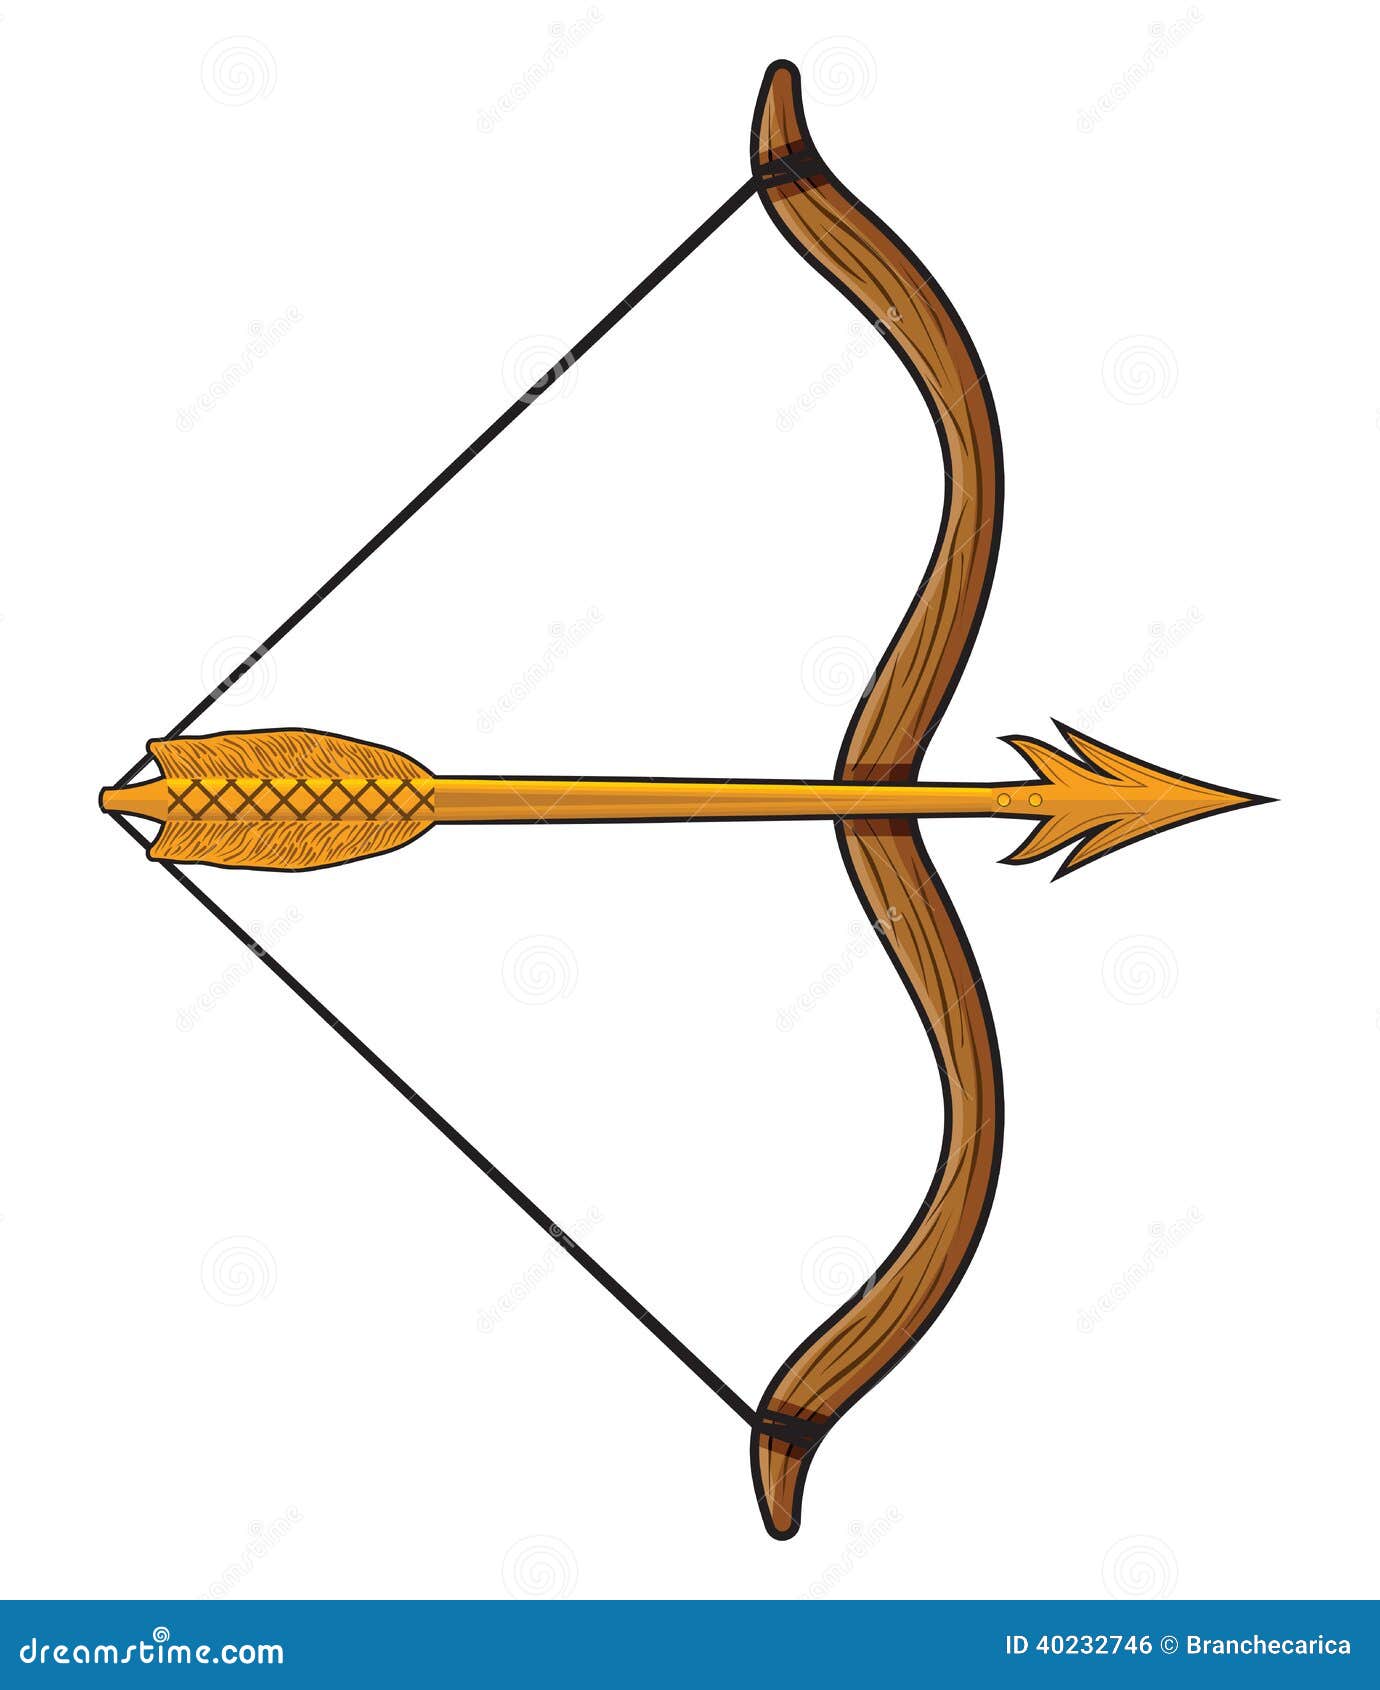 clipart bow and arrow - photo #49